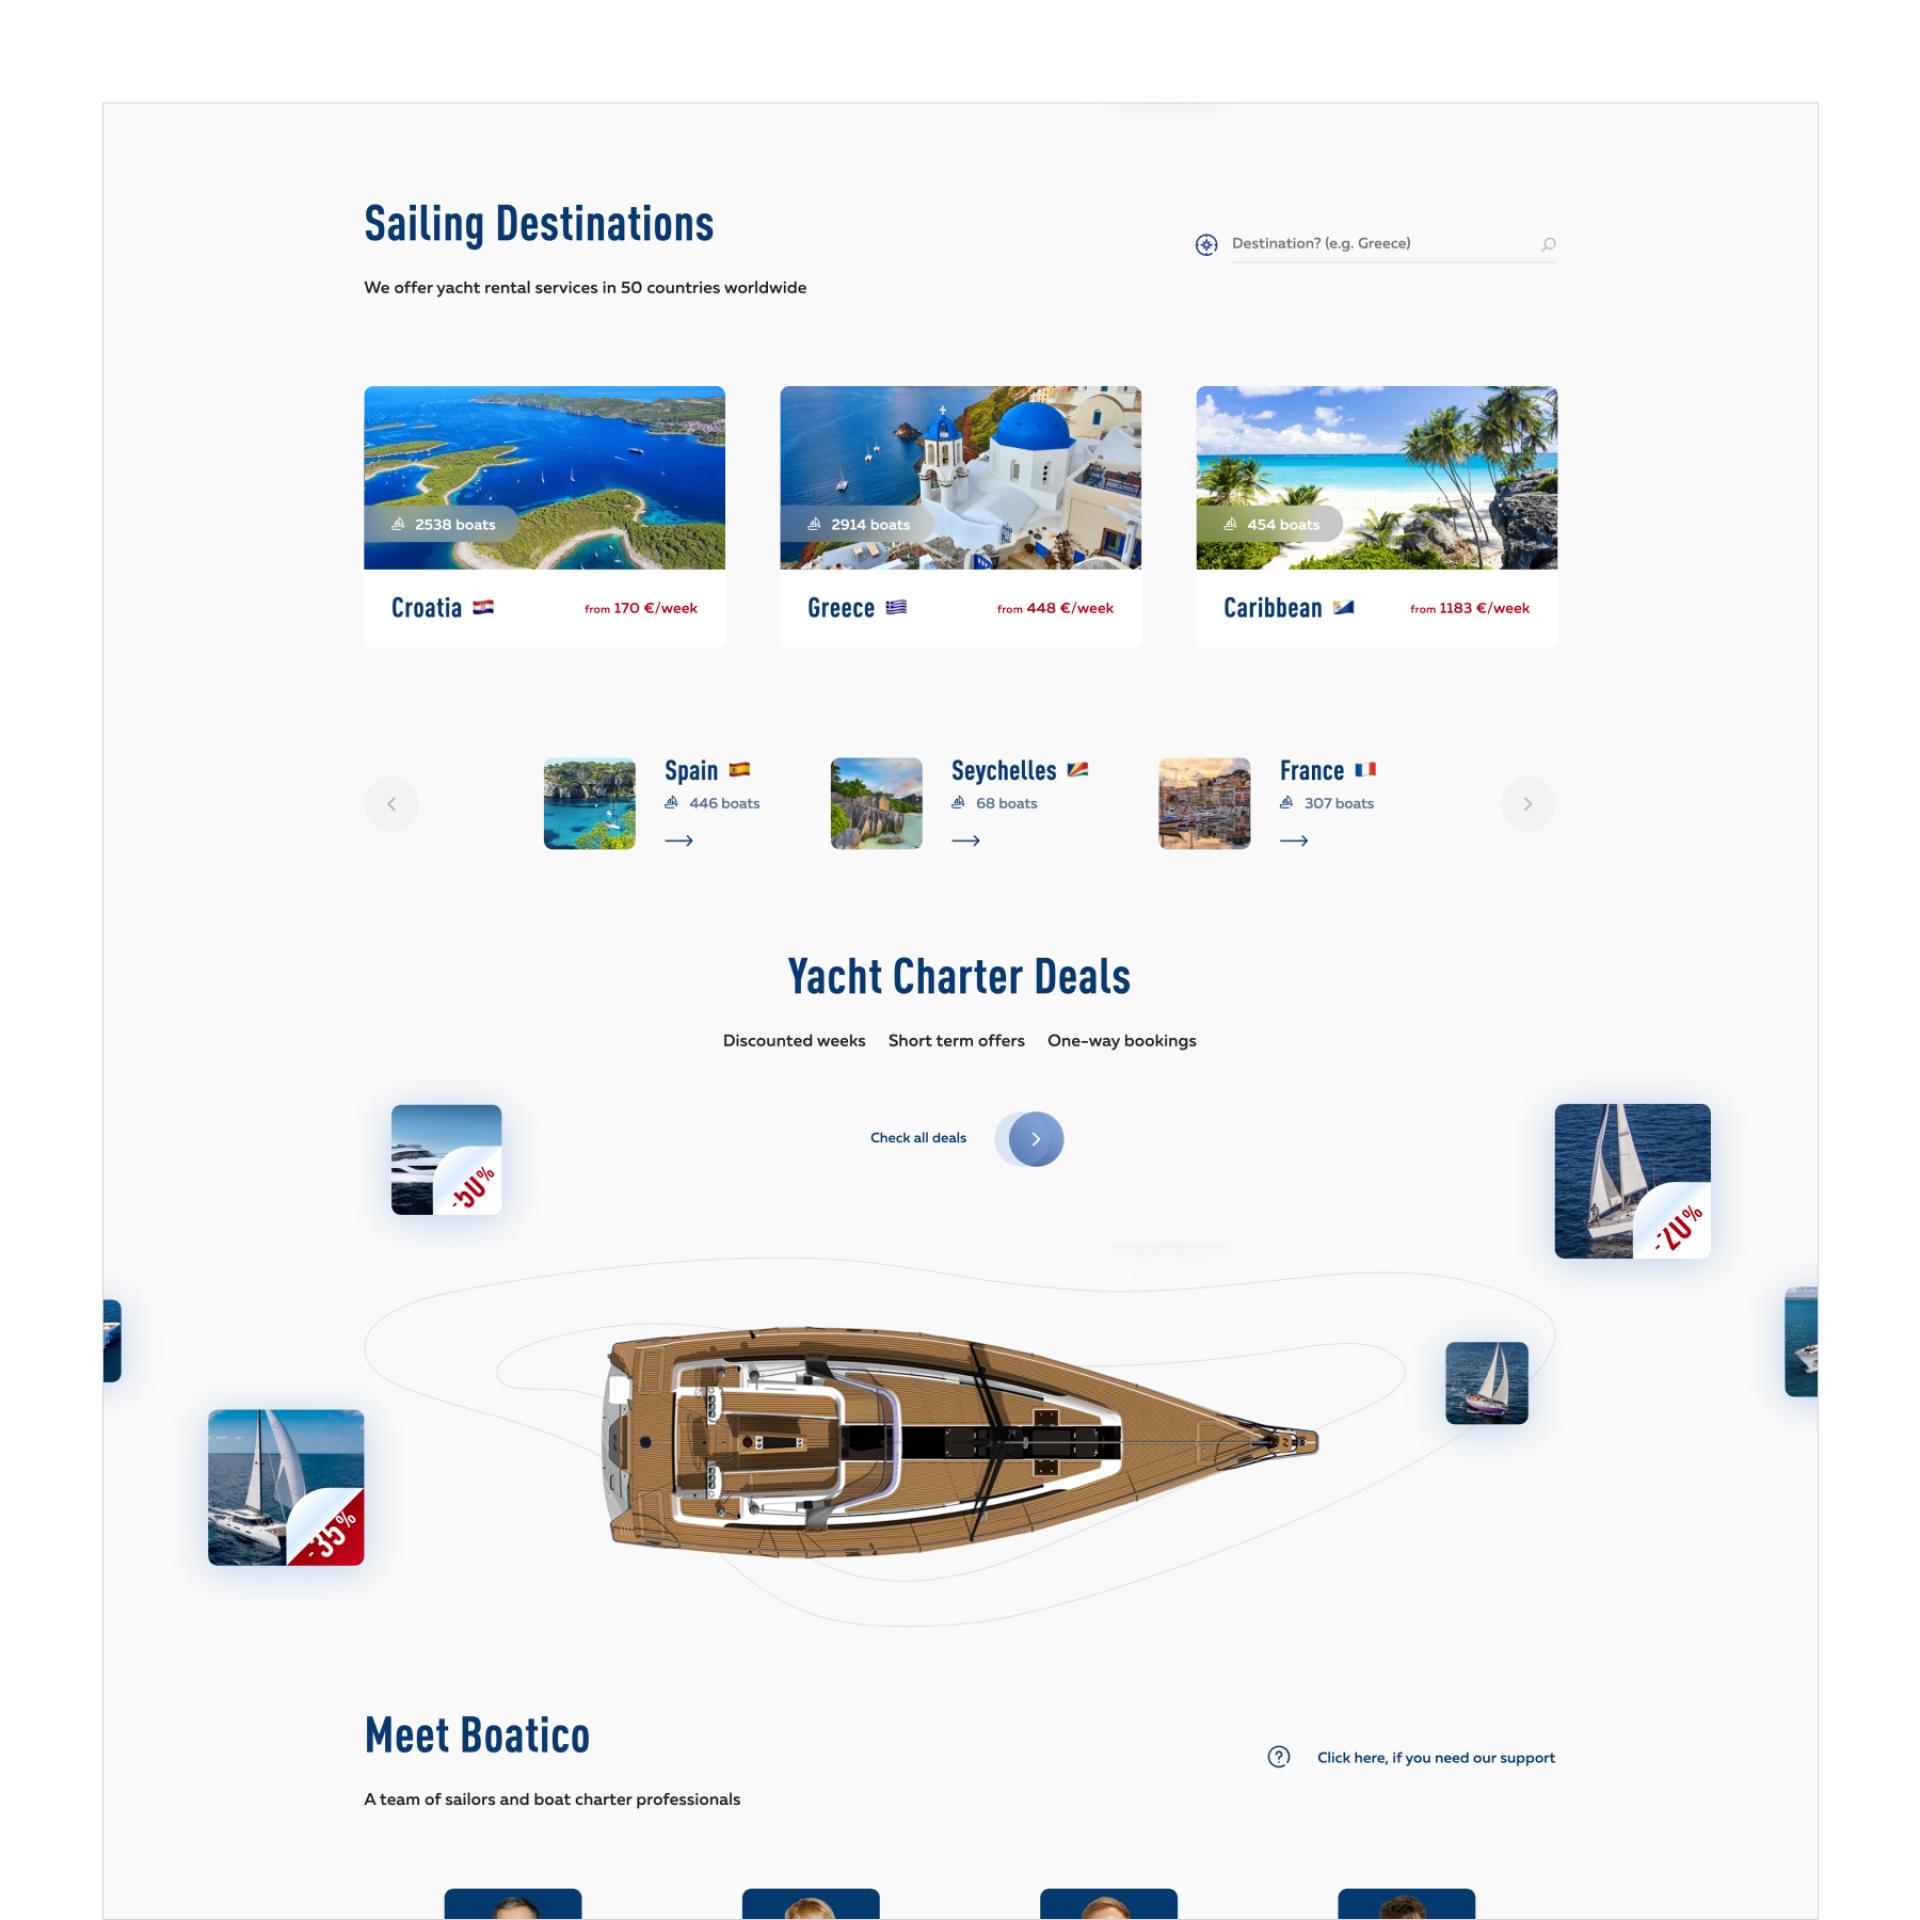 Vega Digital Awards Winner - Boatico yacht charter, Design with Alice K & ITmaestro